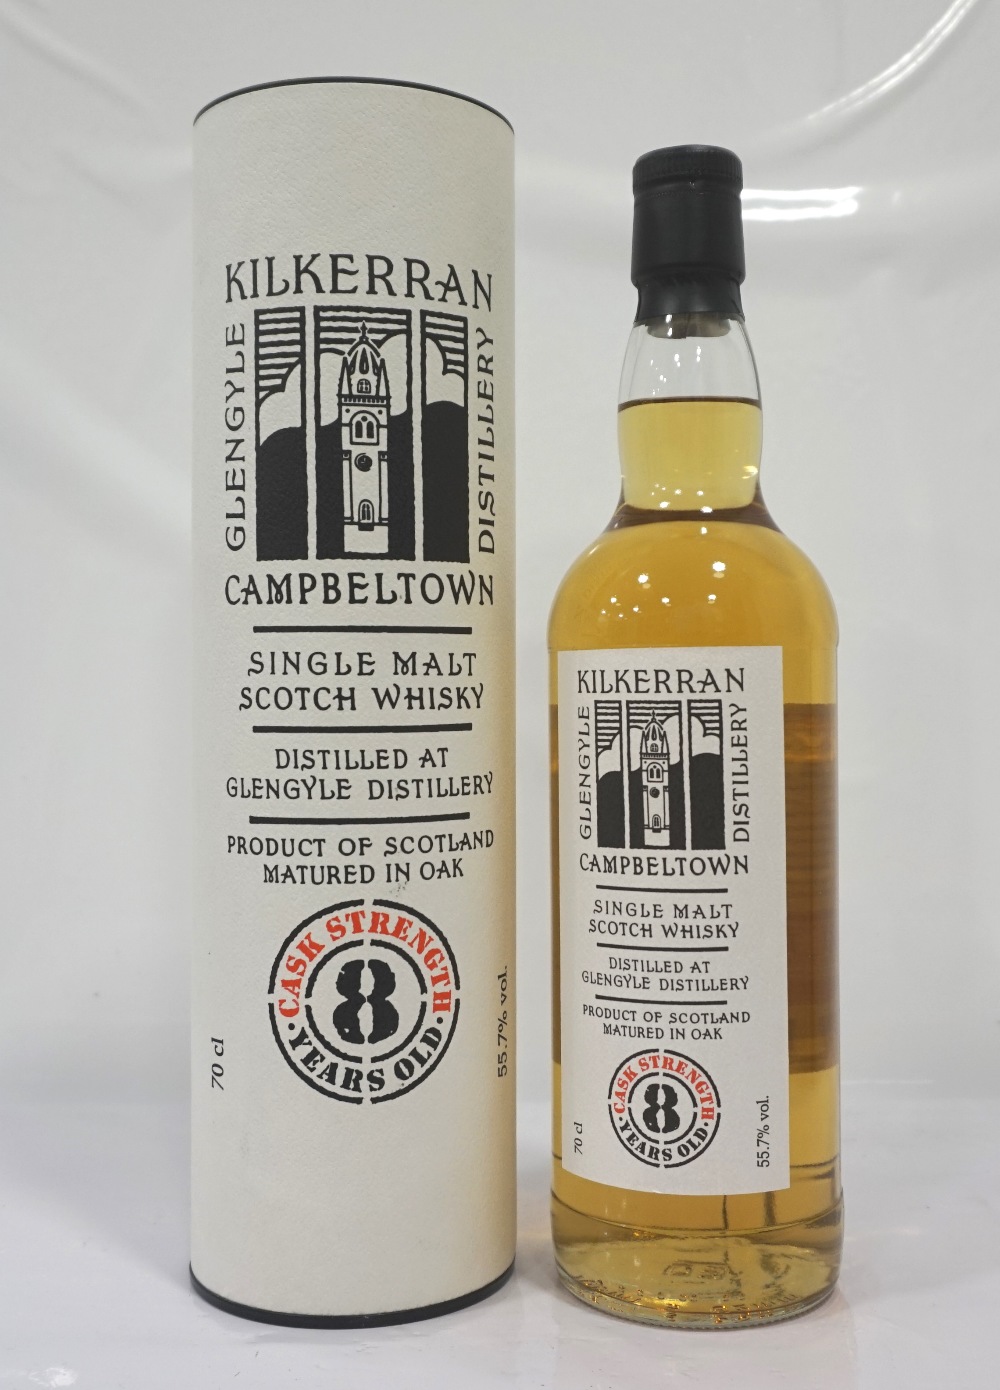 KILKERRAN CASK STRENGTH 8YO A nice bottle of the Kilkerran 8 Year Old Single Malt Scotch Whisky